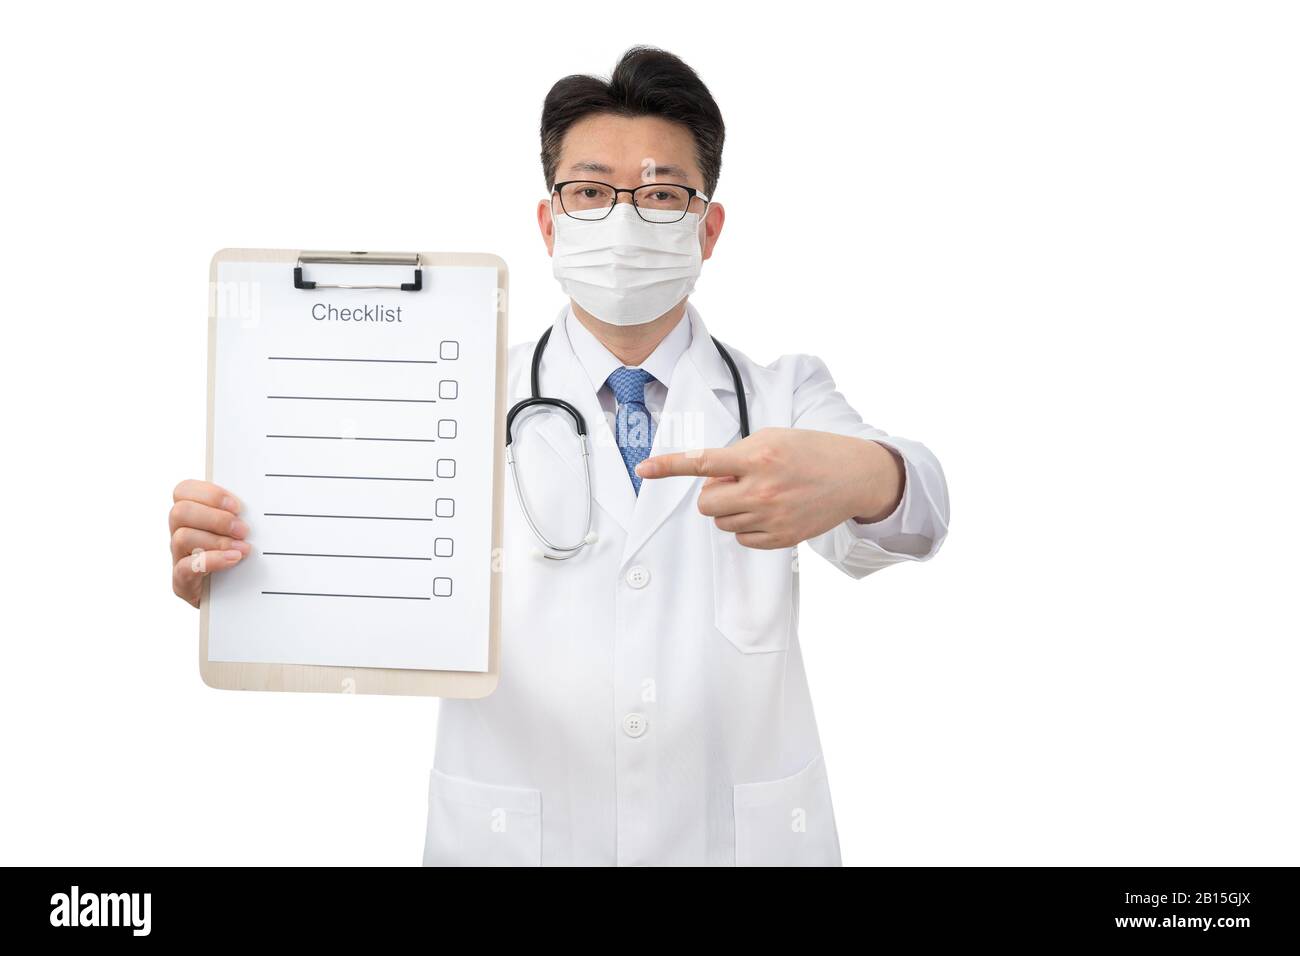 Asiatischer Arzt mittleren Alters, der die Zwischenablage auf weißem Hintergrund hält. Stockfoto